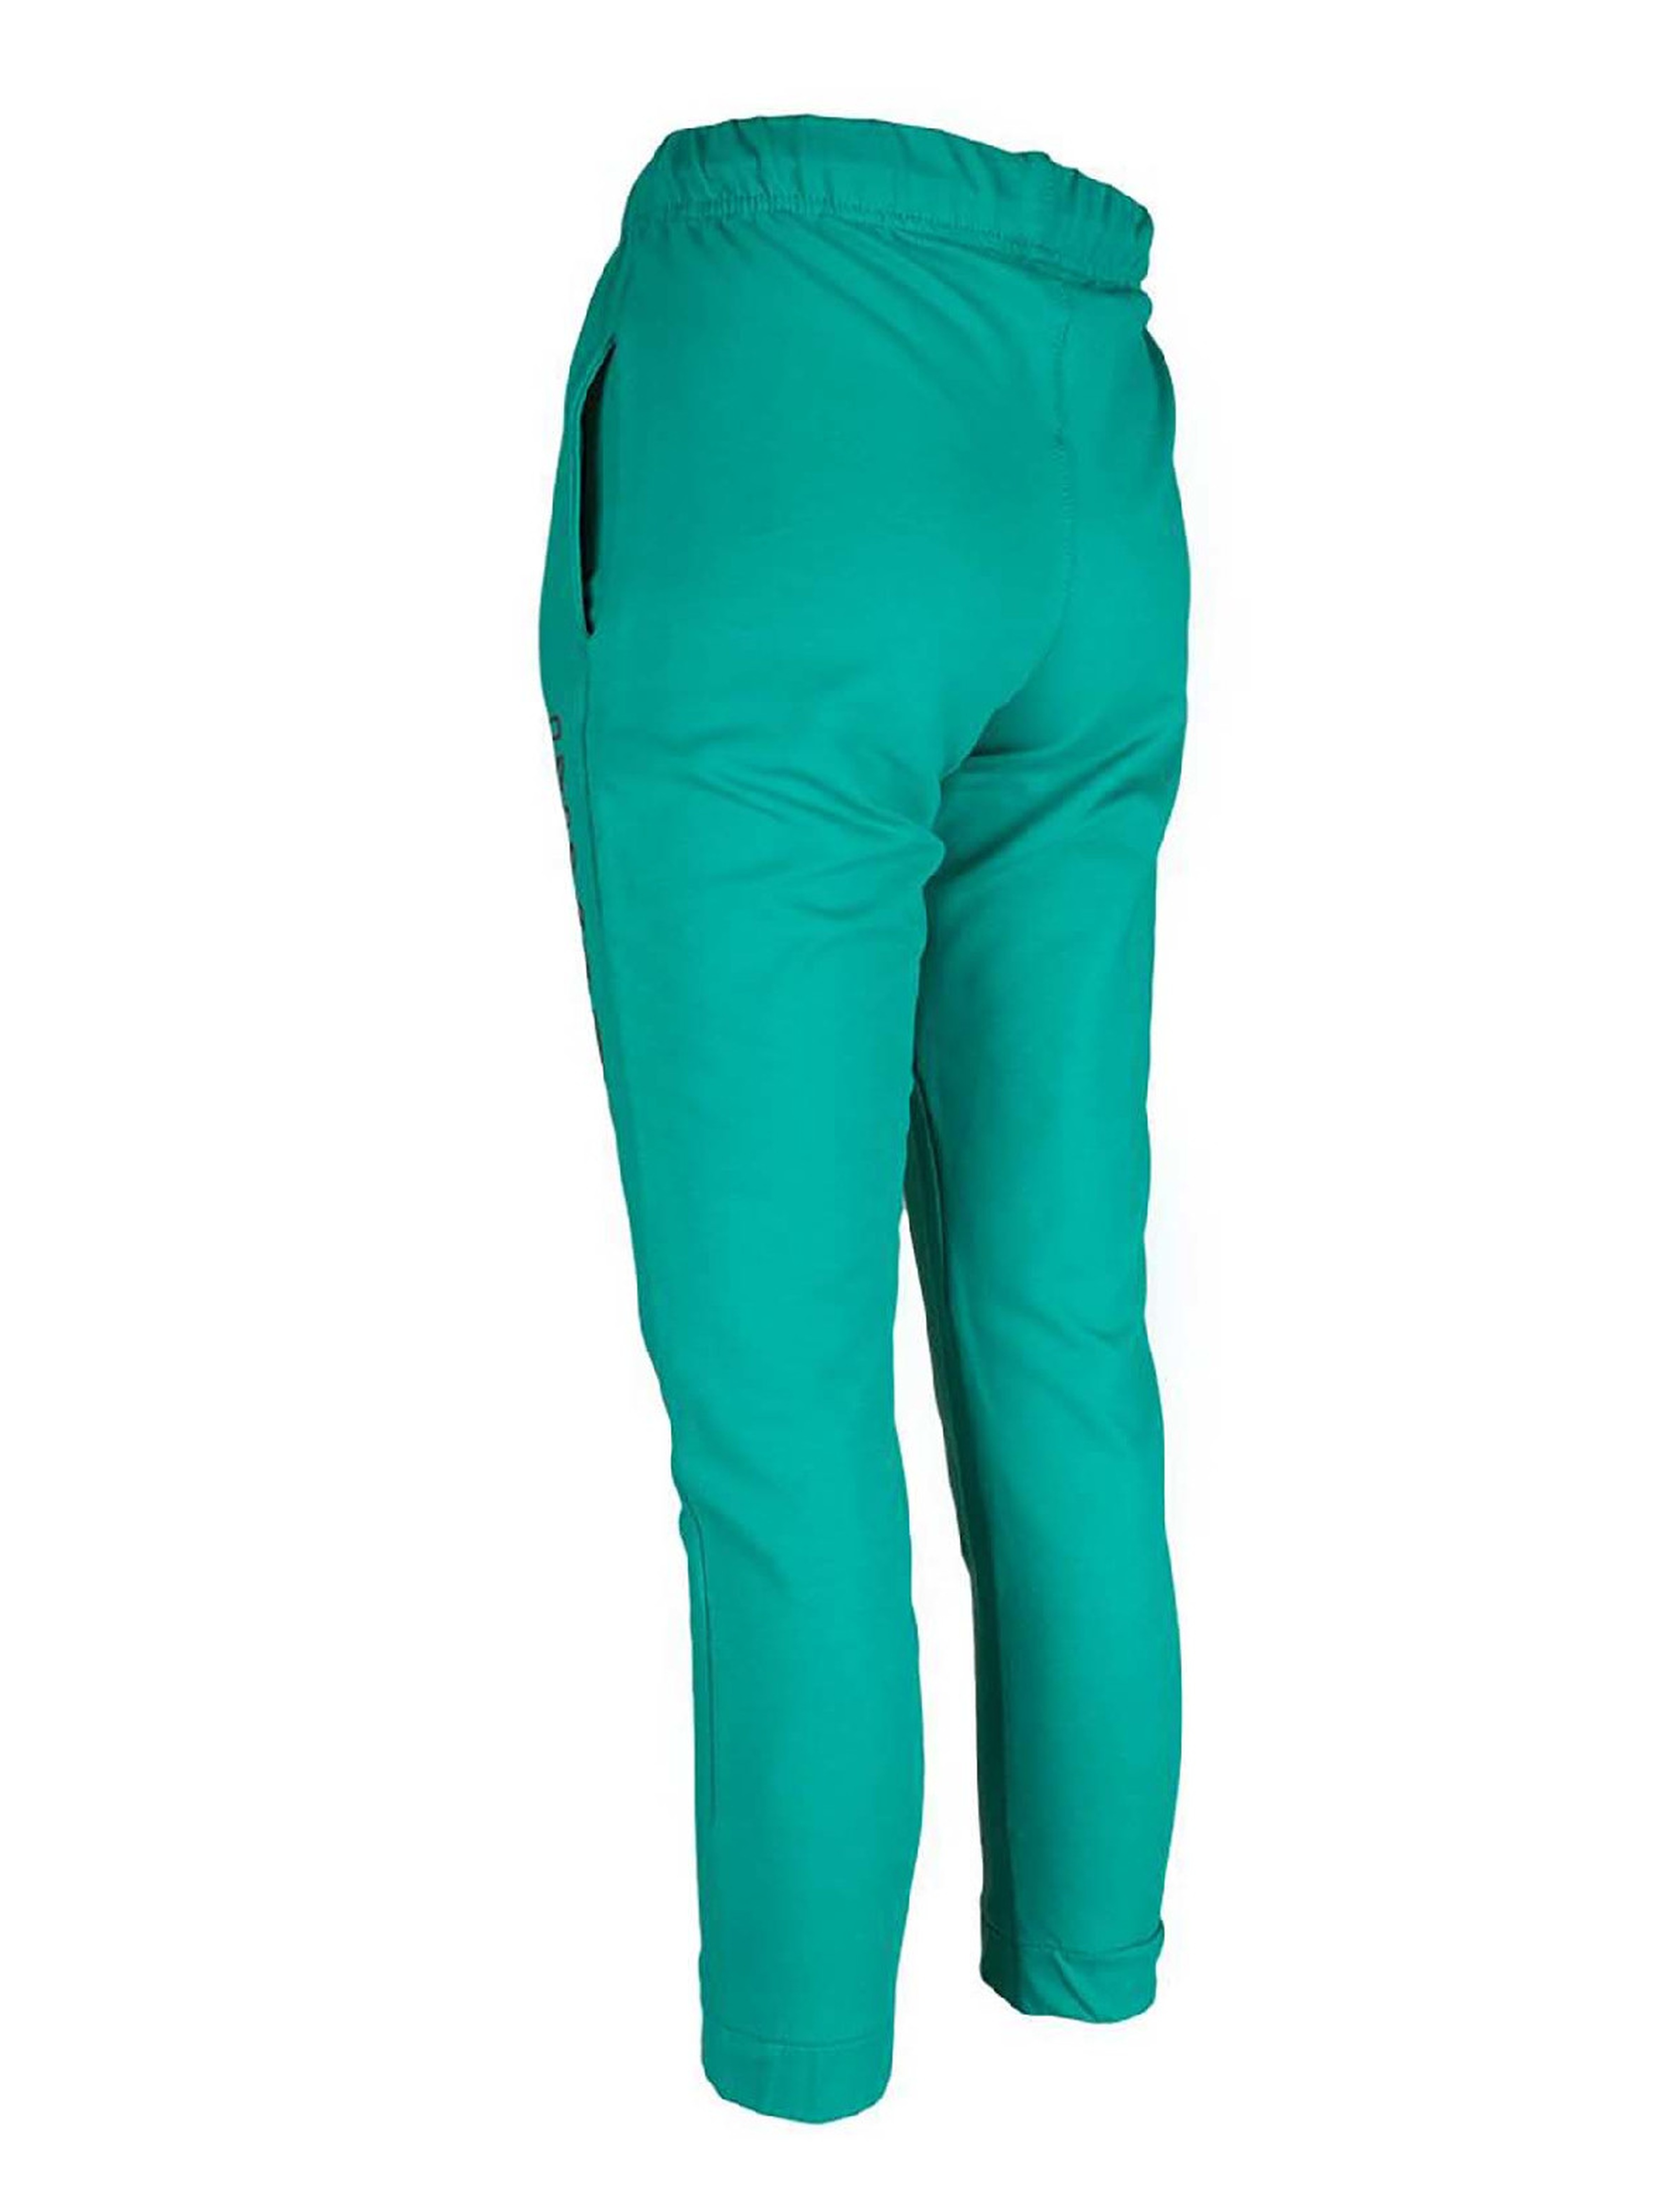 Spodnie dresowe dla chłopca zielone z aplikacją INVASION Tup Tup